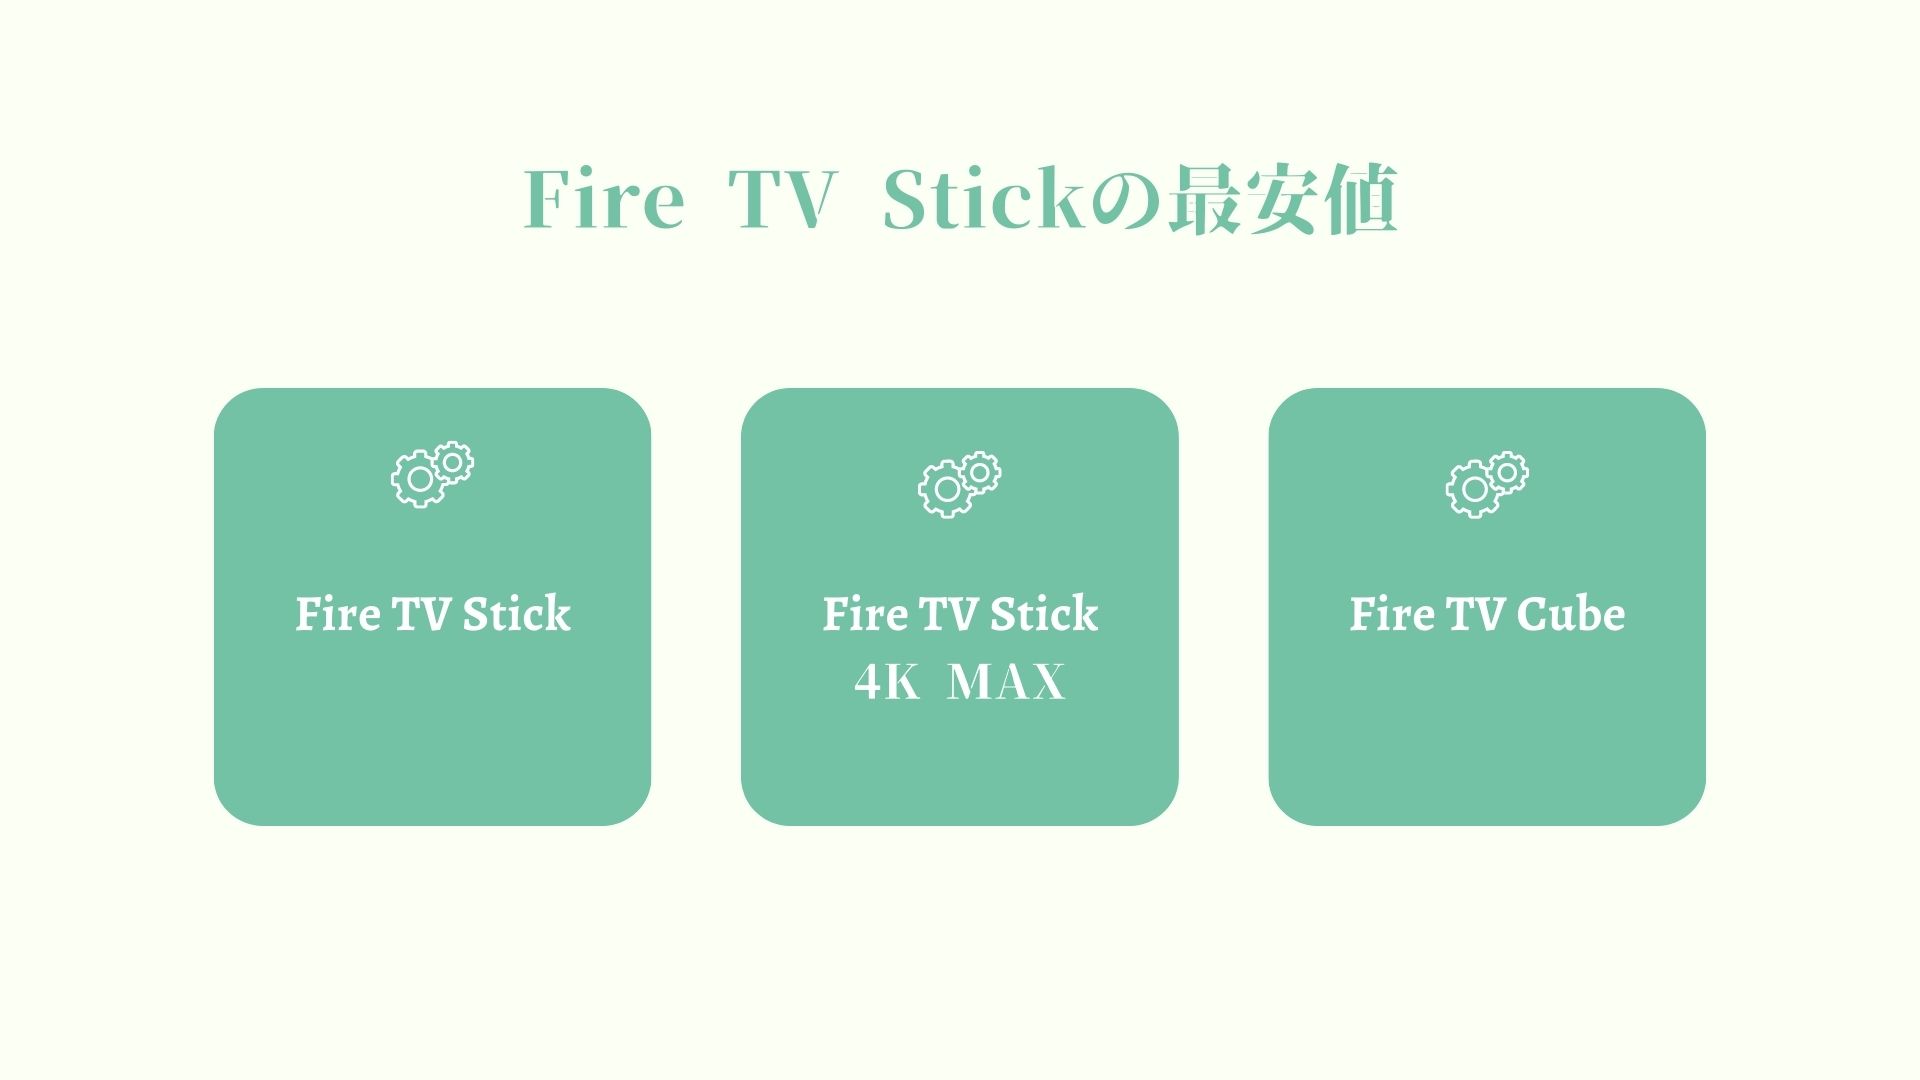 【最安値】Fire TV Stickシリーズ（4K MAX,Cube）の買い時はいつ？